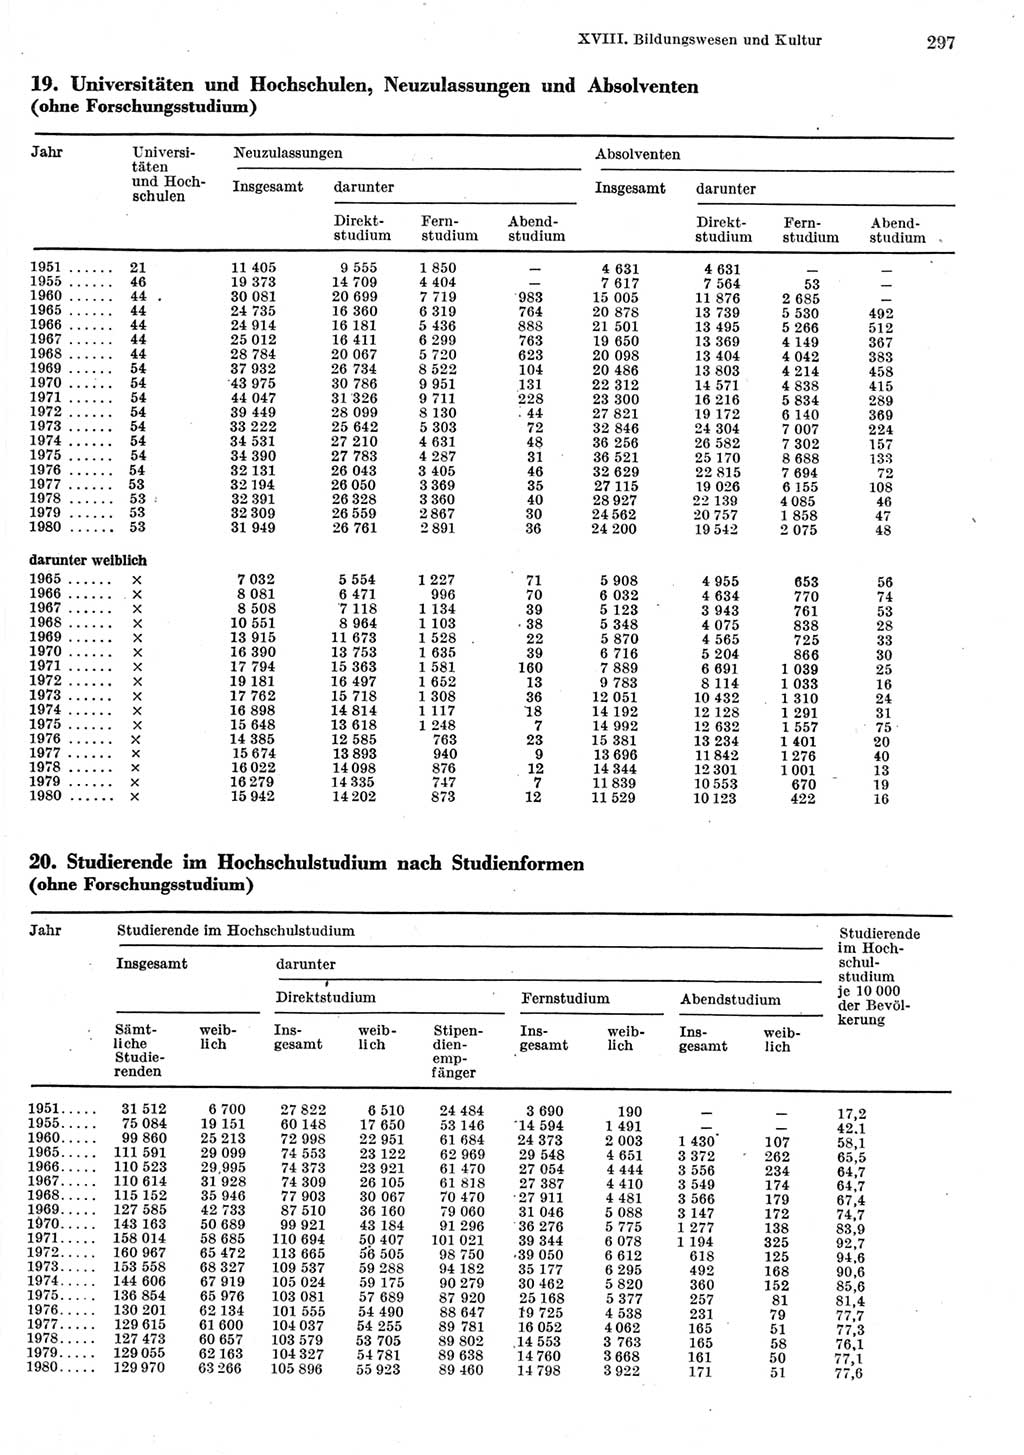 Statistisches Jahrbuch der Deutschen Demokratischen Republik (DDR) 1981, Seite 297 (Stat. Jb. DDR 1981, S. 297)